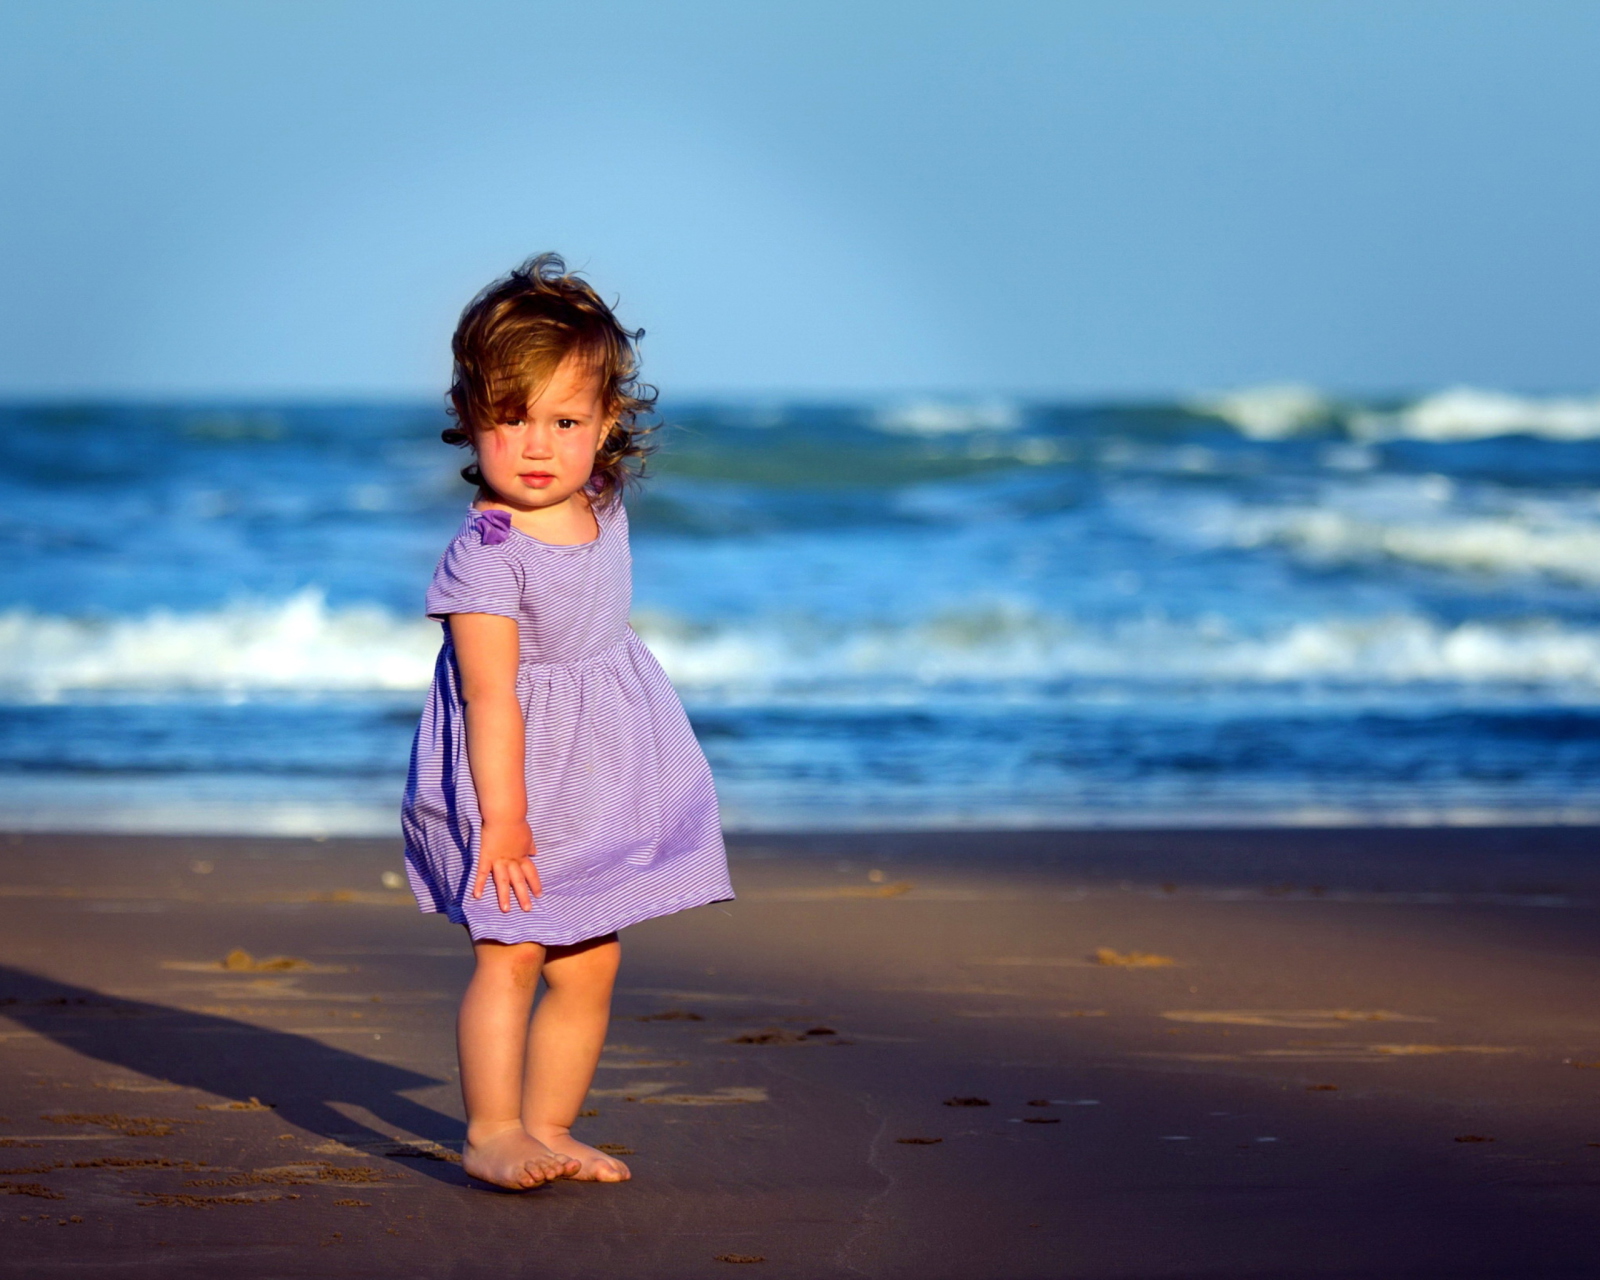 Little Girl On Beach wallpaper 1600x1280